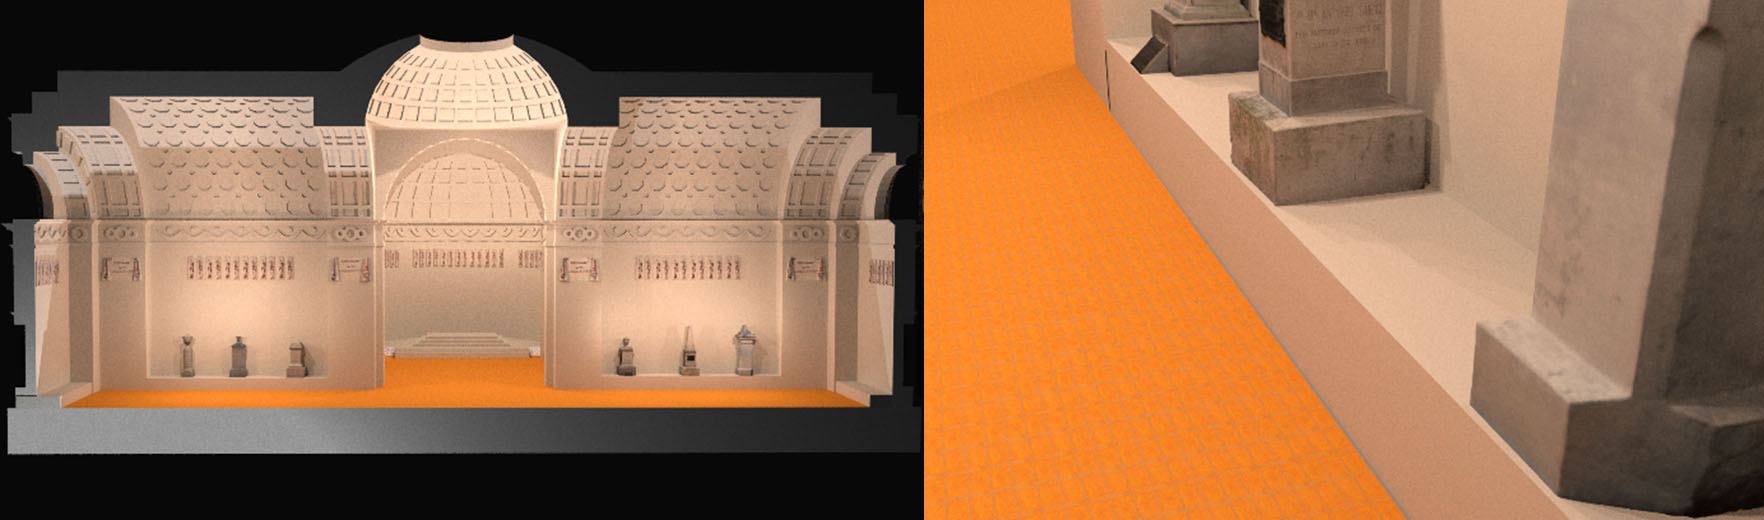 Imagen renderizada en Blender, con la
versión de piso de baldosas francesas y muro caleado.